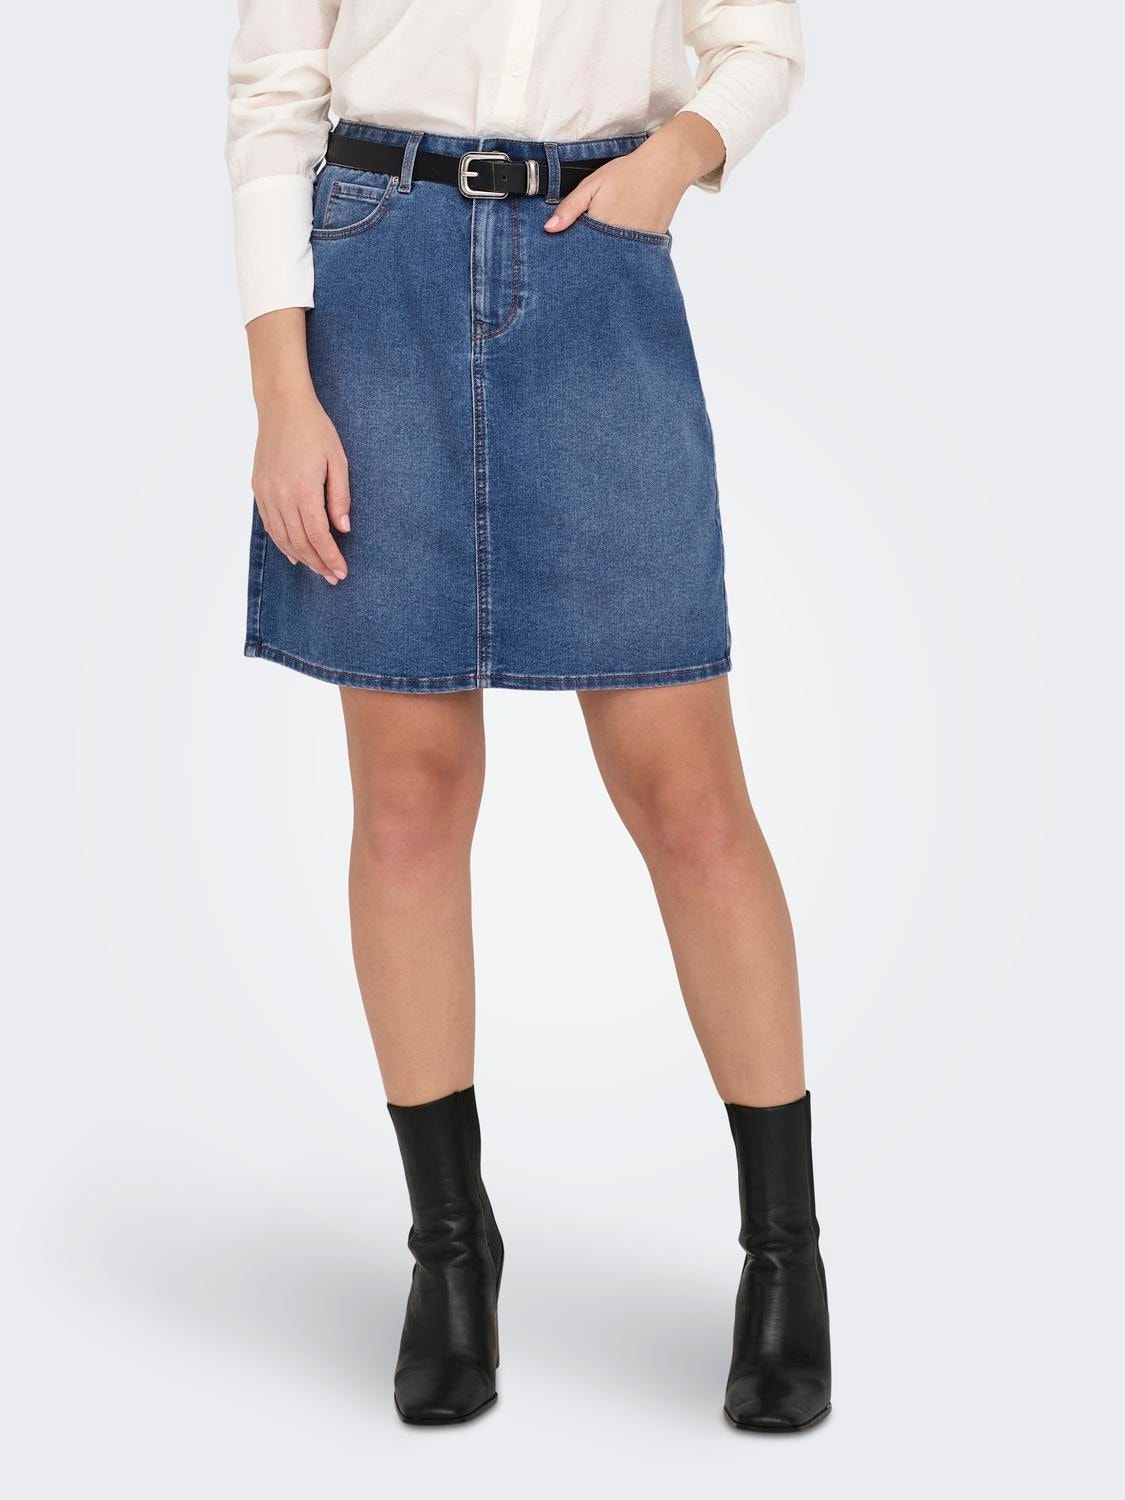 ONLY mini High Waist denim skirt -Medium Blue Denim - 15325894